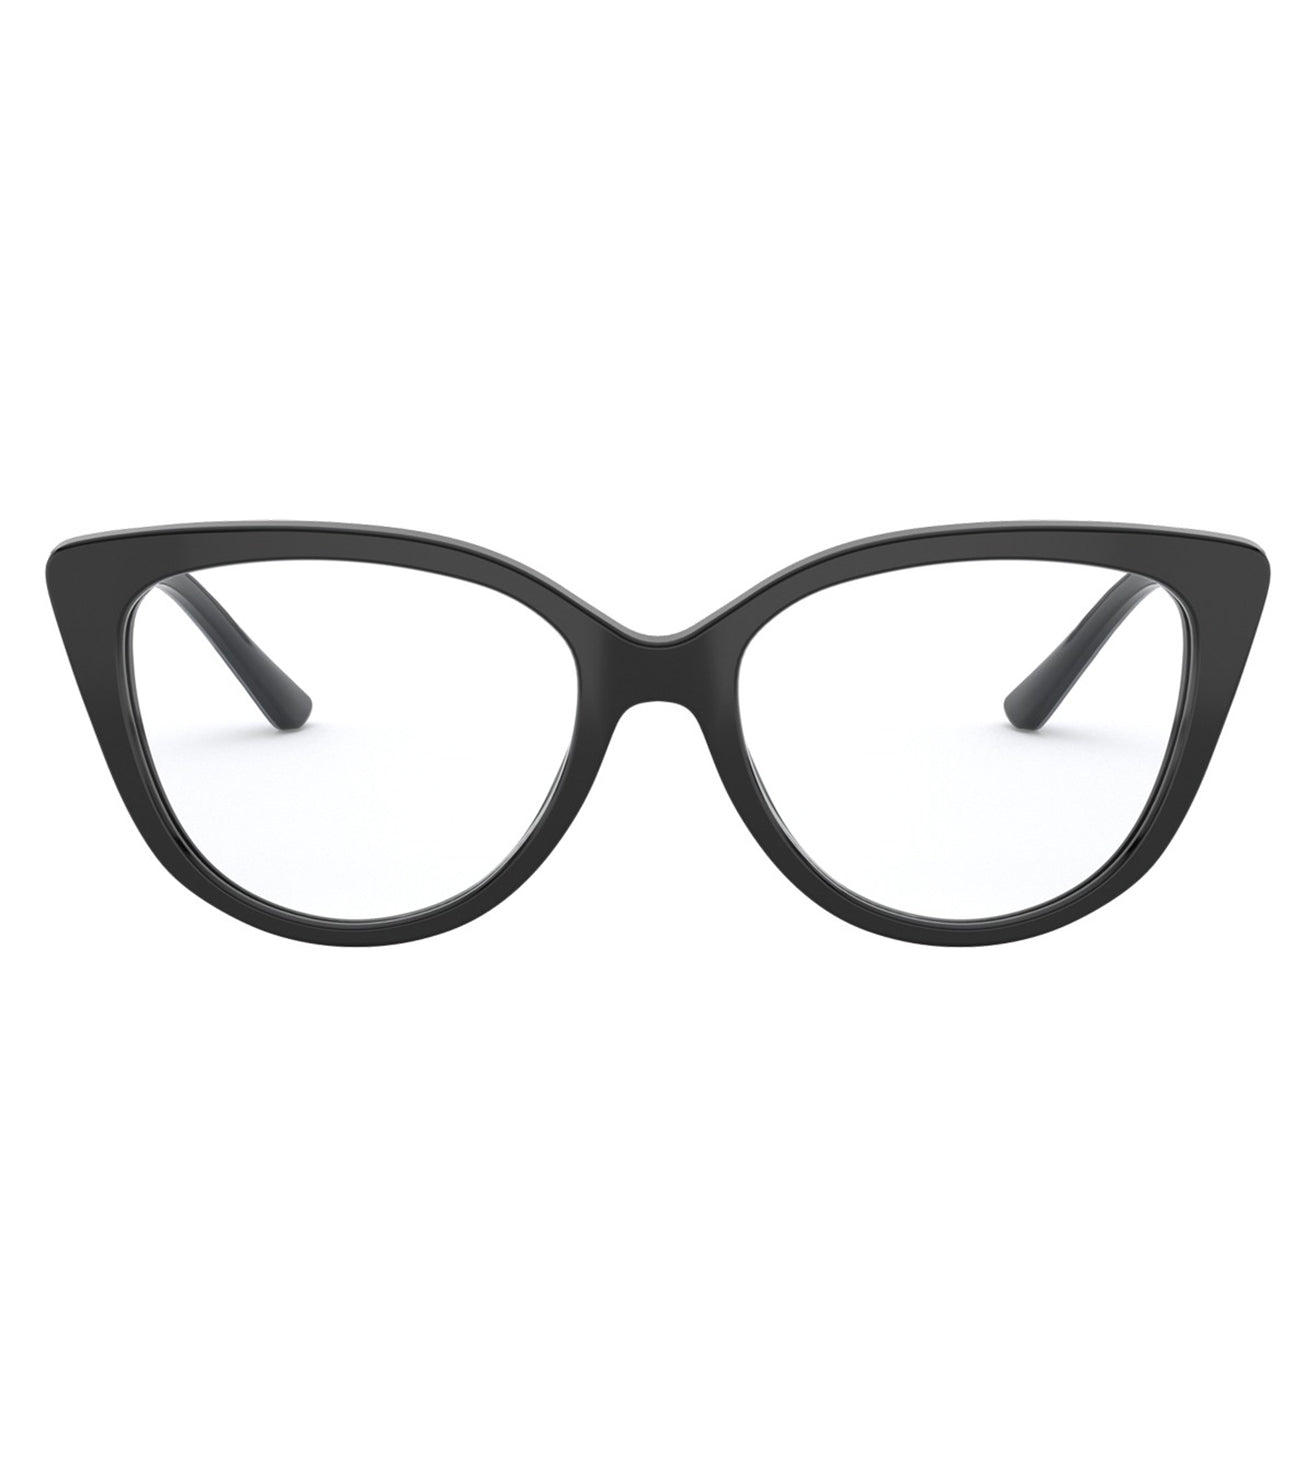 Michael Kors Women's Black Cat-eye Optical Frame